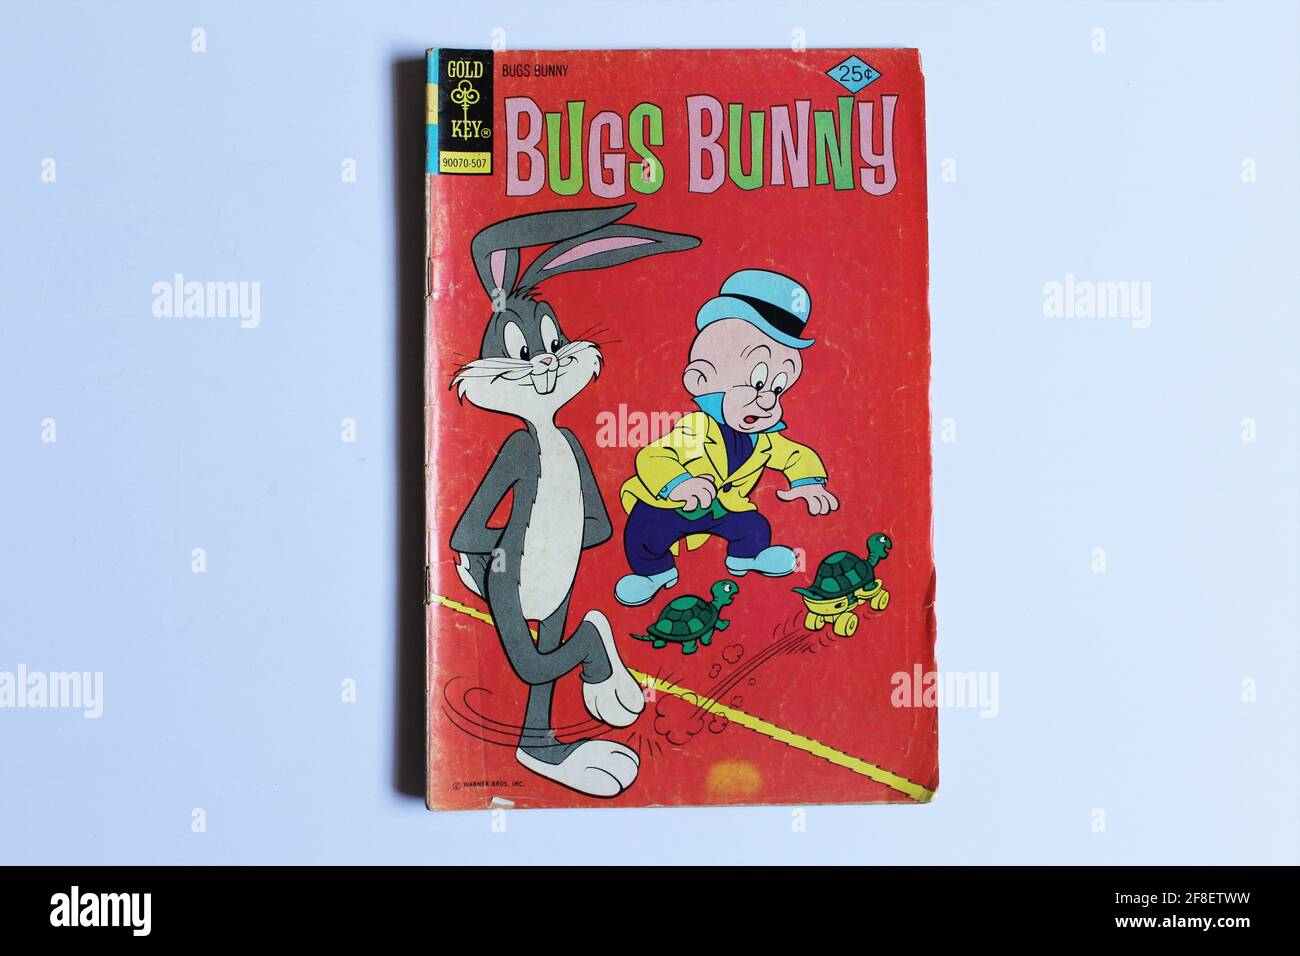 BUGS BUNNY #164 bande dessinée. Les aventures de la célèbre Warner Bros. Personnage de bande dessinée Bugs Bunny par Gold Key Comics Banque D'Images